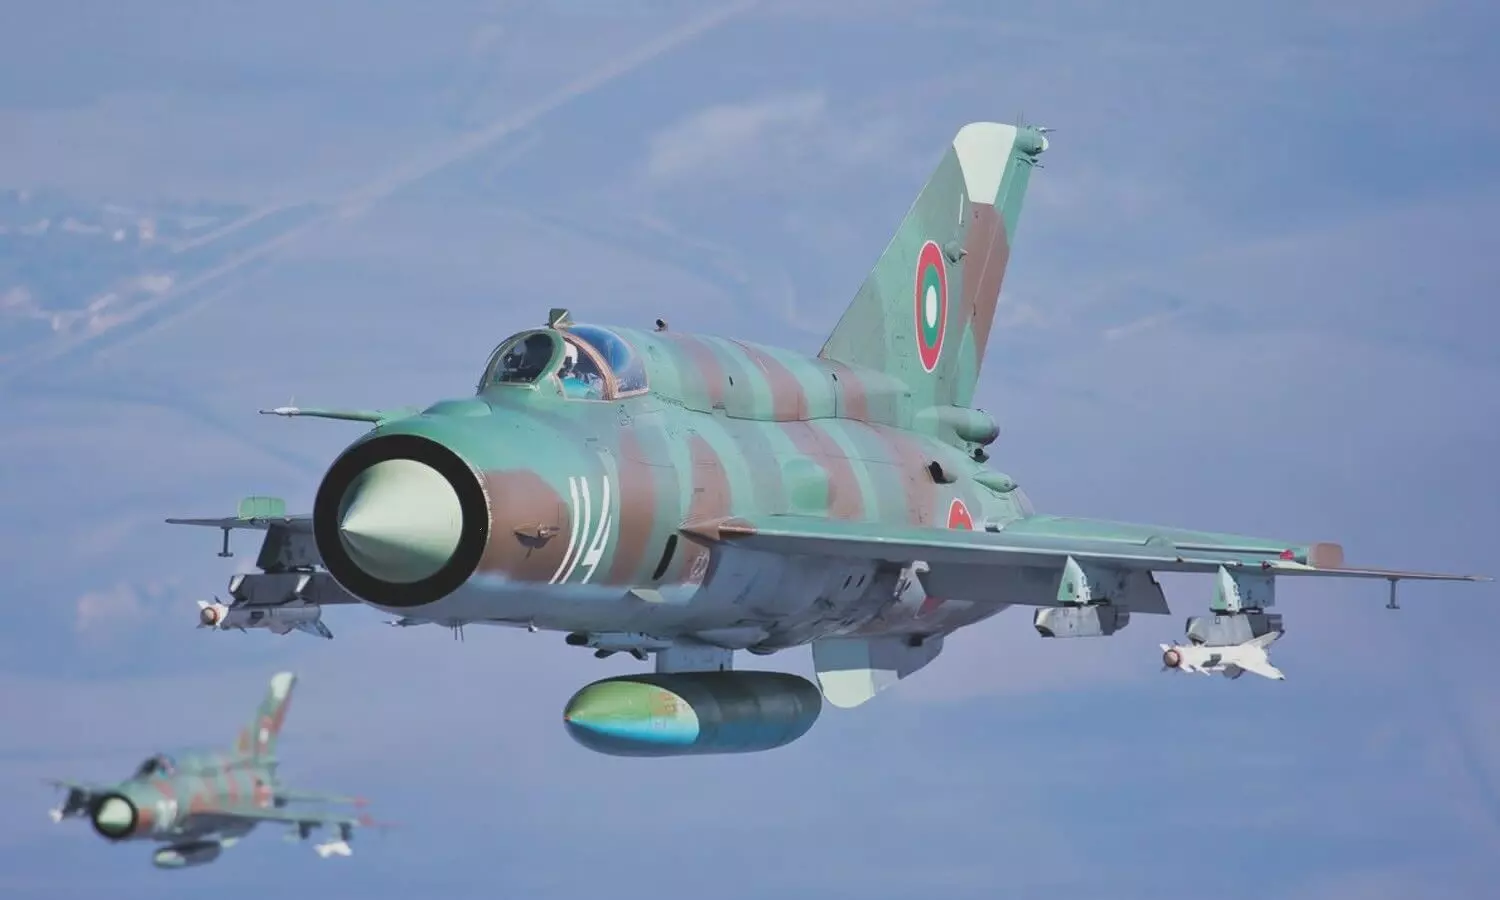 MiG-21 Crash: पंजाब में बड़ा हादसा, फाइटर जेट मिग-21 हुआ क्रैश, एयरफोर्स में हड़कंप